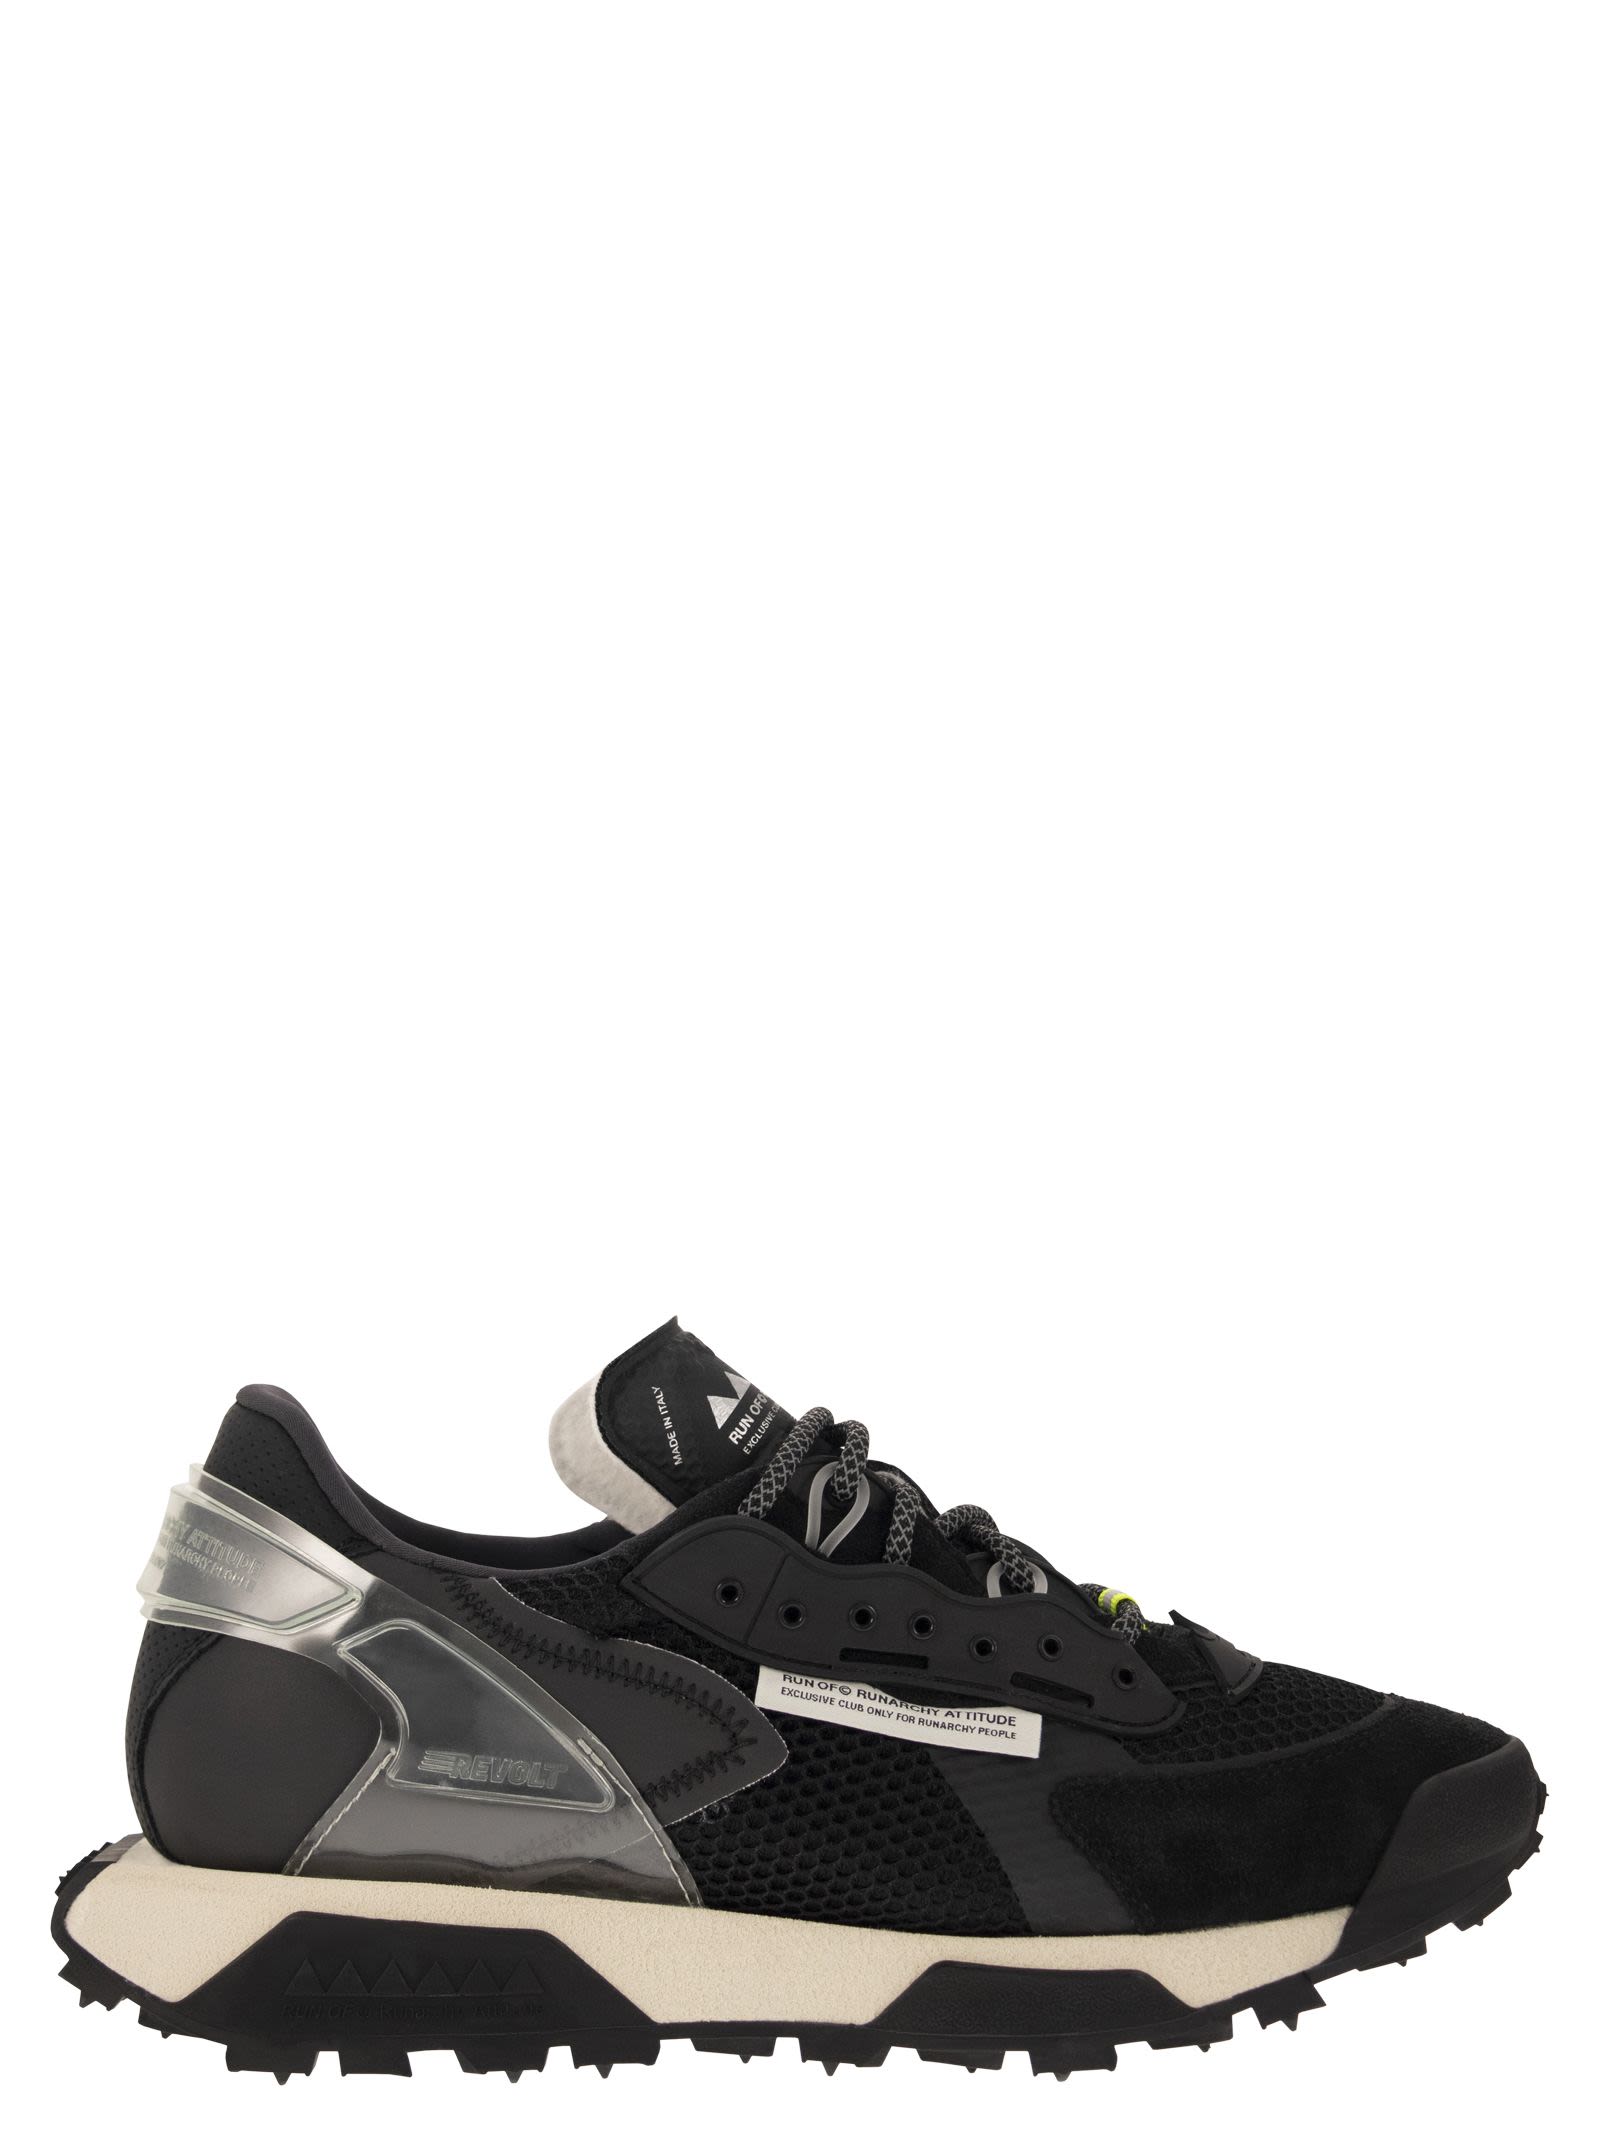 Sur-Chaussures Velo Rogelli Tech-01 Fiandrex - Unisexe - Noir